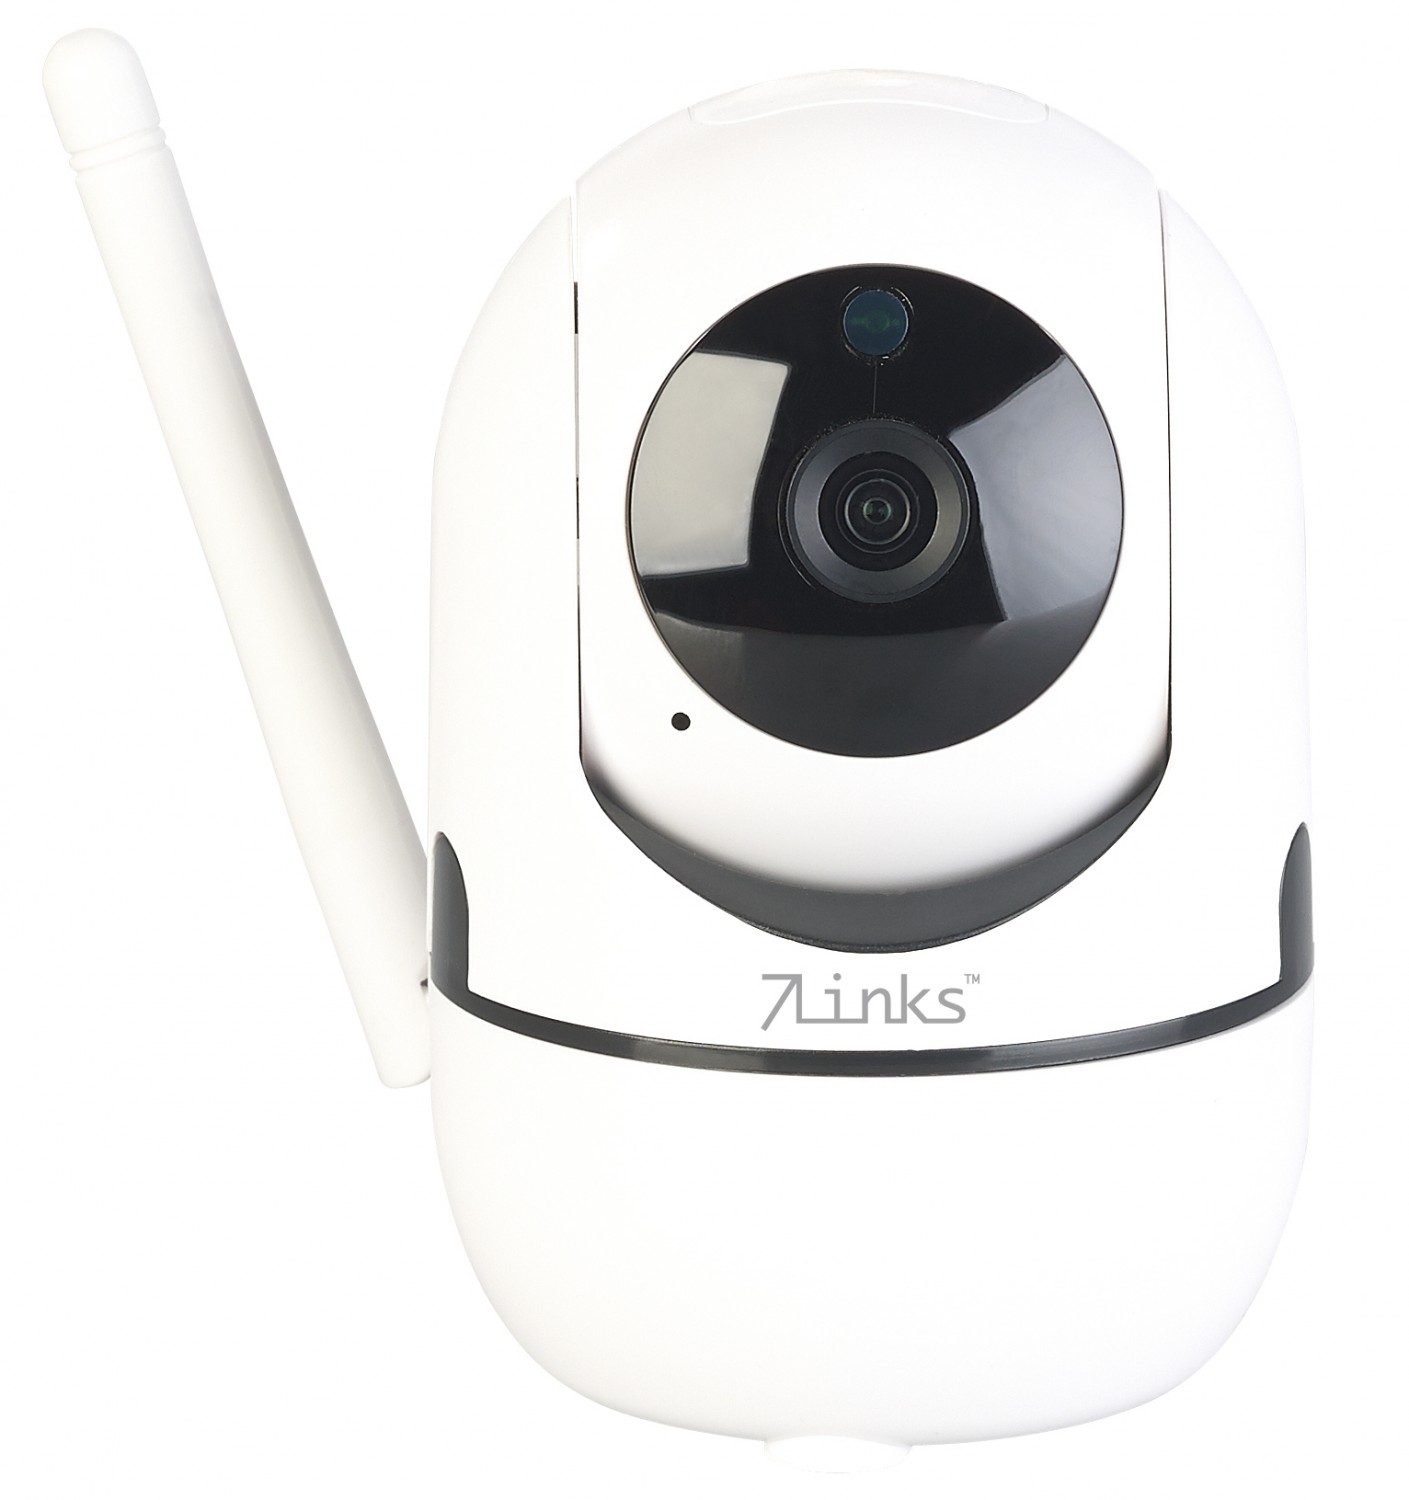 Produktvorstellung Objekt-Tracking, WLAN und App: IP-Überwachungskamera von 7links - News, Bild 1